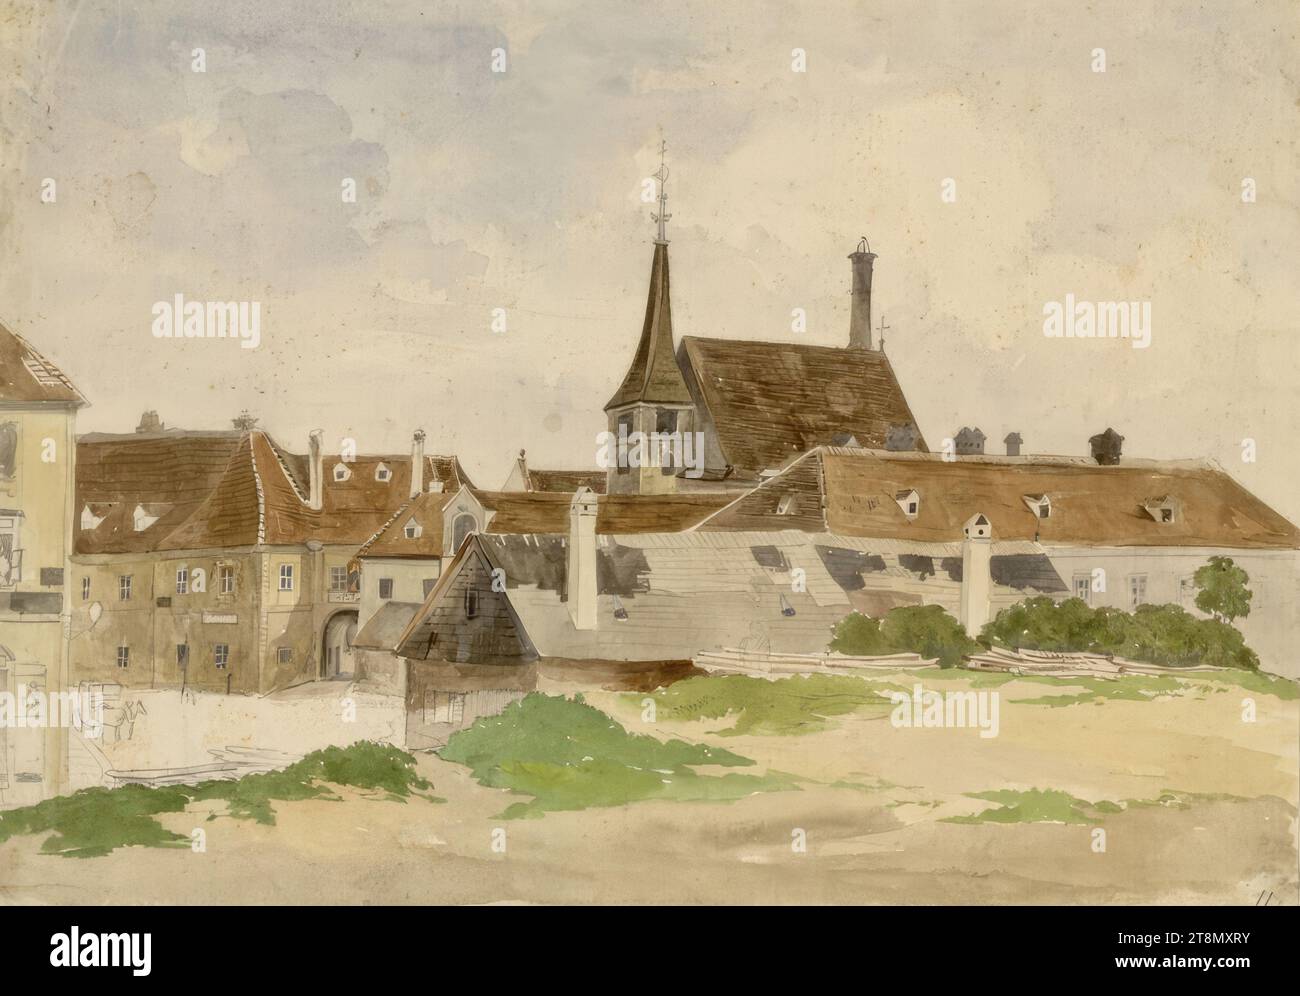 L'ancien hôpital près de Sankt Marx et la brasserie, anonyme, 19e siècle, dessin, aquarelle, 23,8 x 33,4 cm Banque D'Images